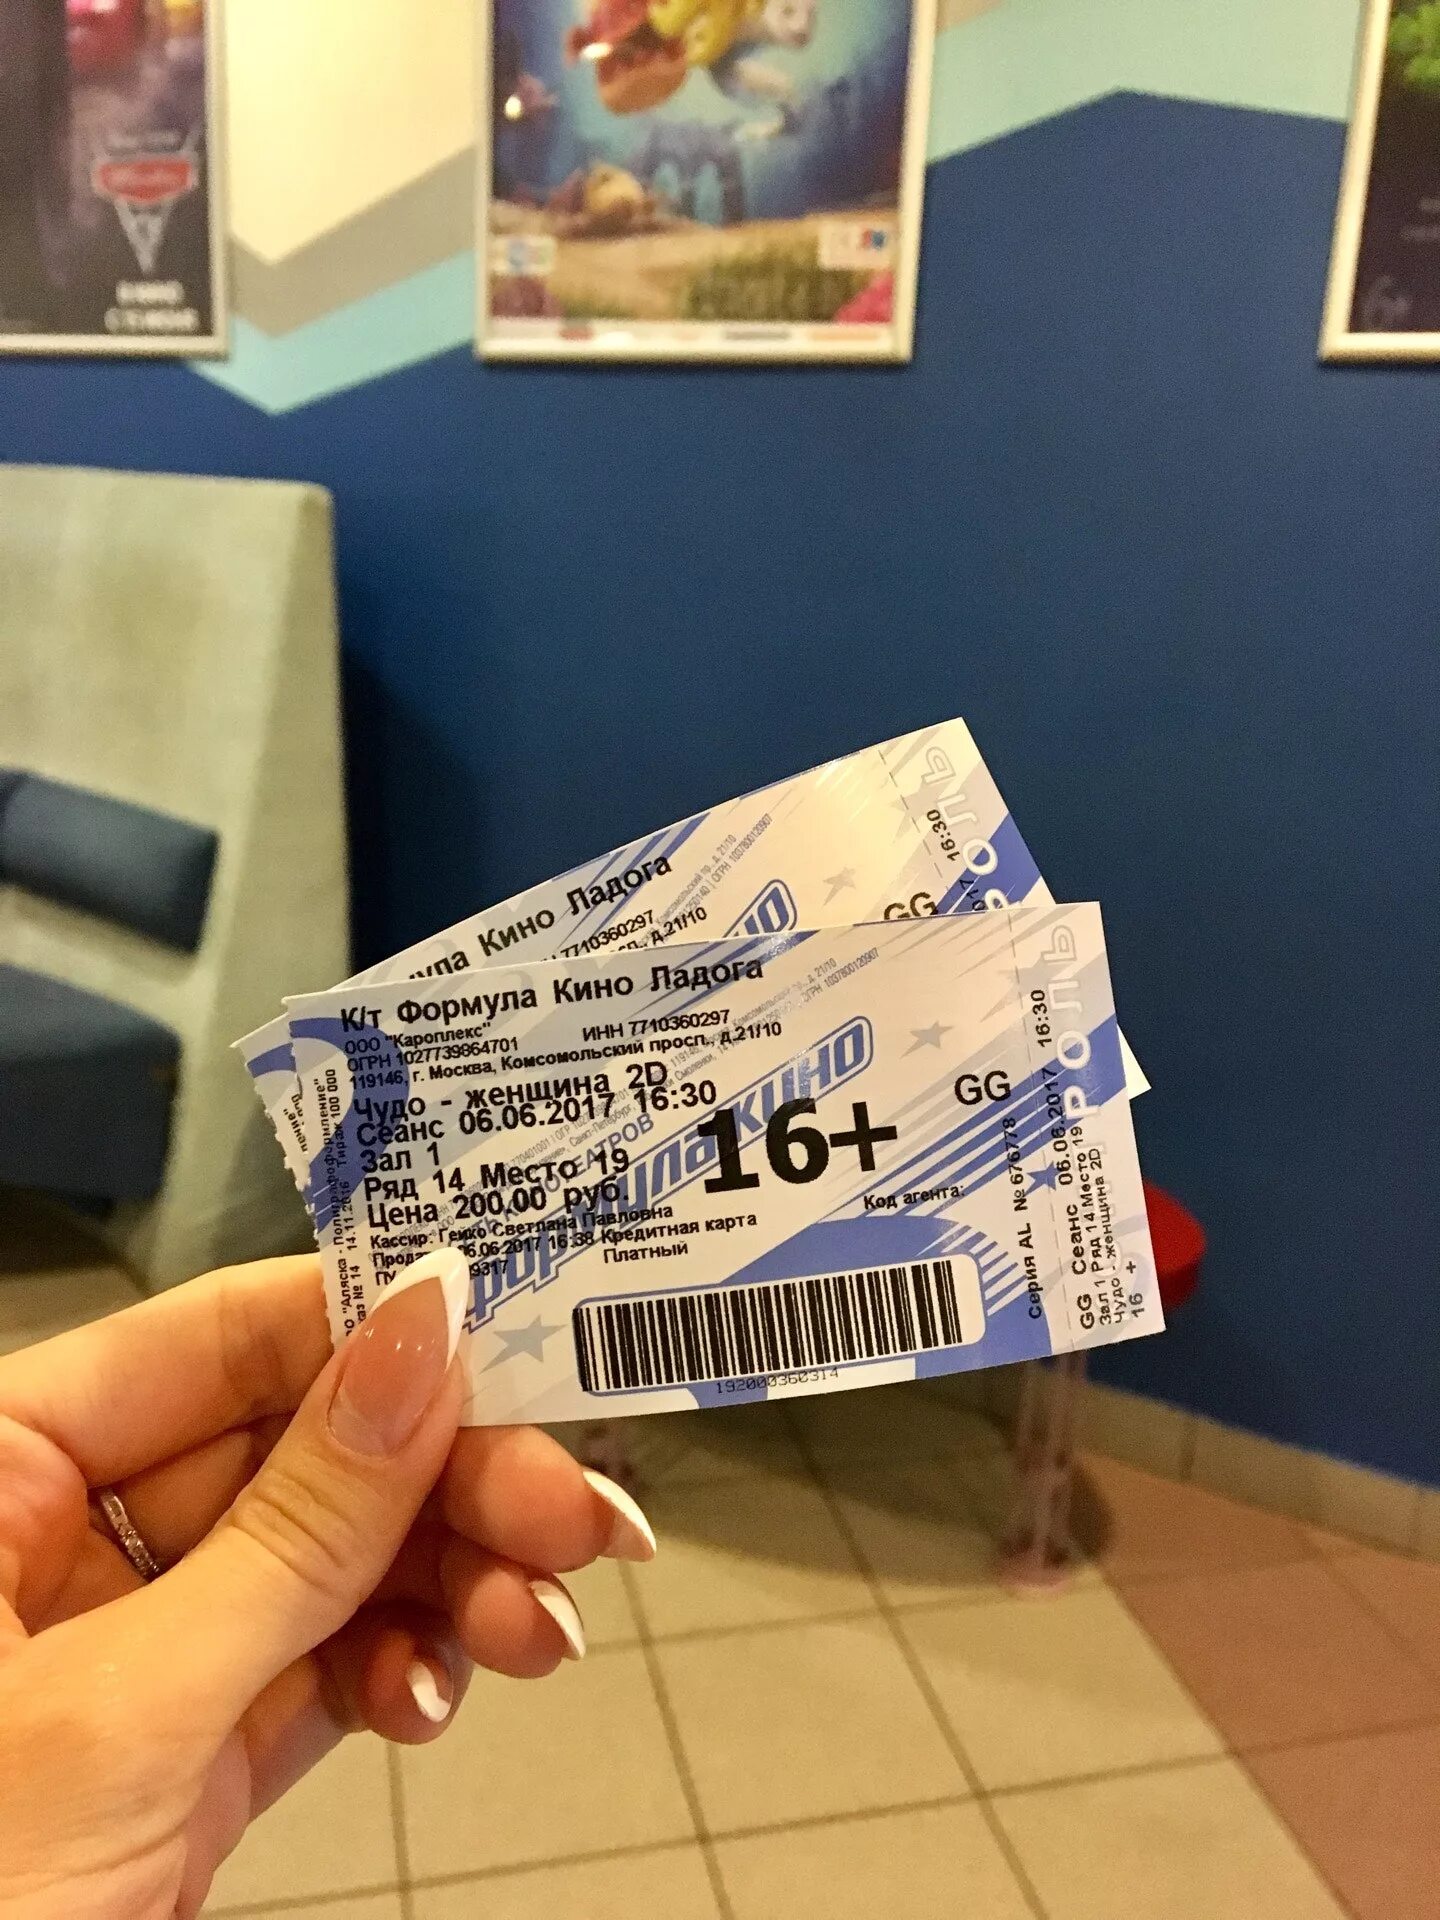 Кинотеатр фокус билеты. Билет в кинотеатр. Билеты из кинотеатра.